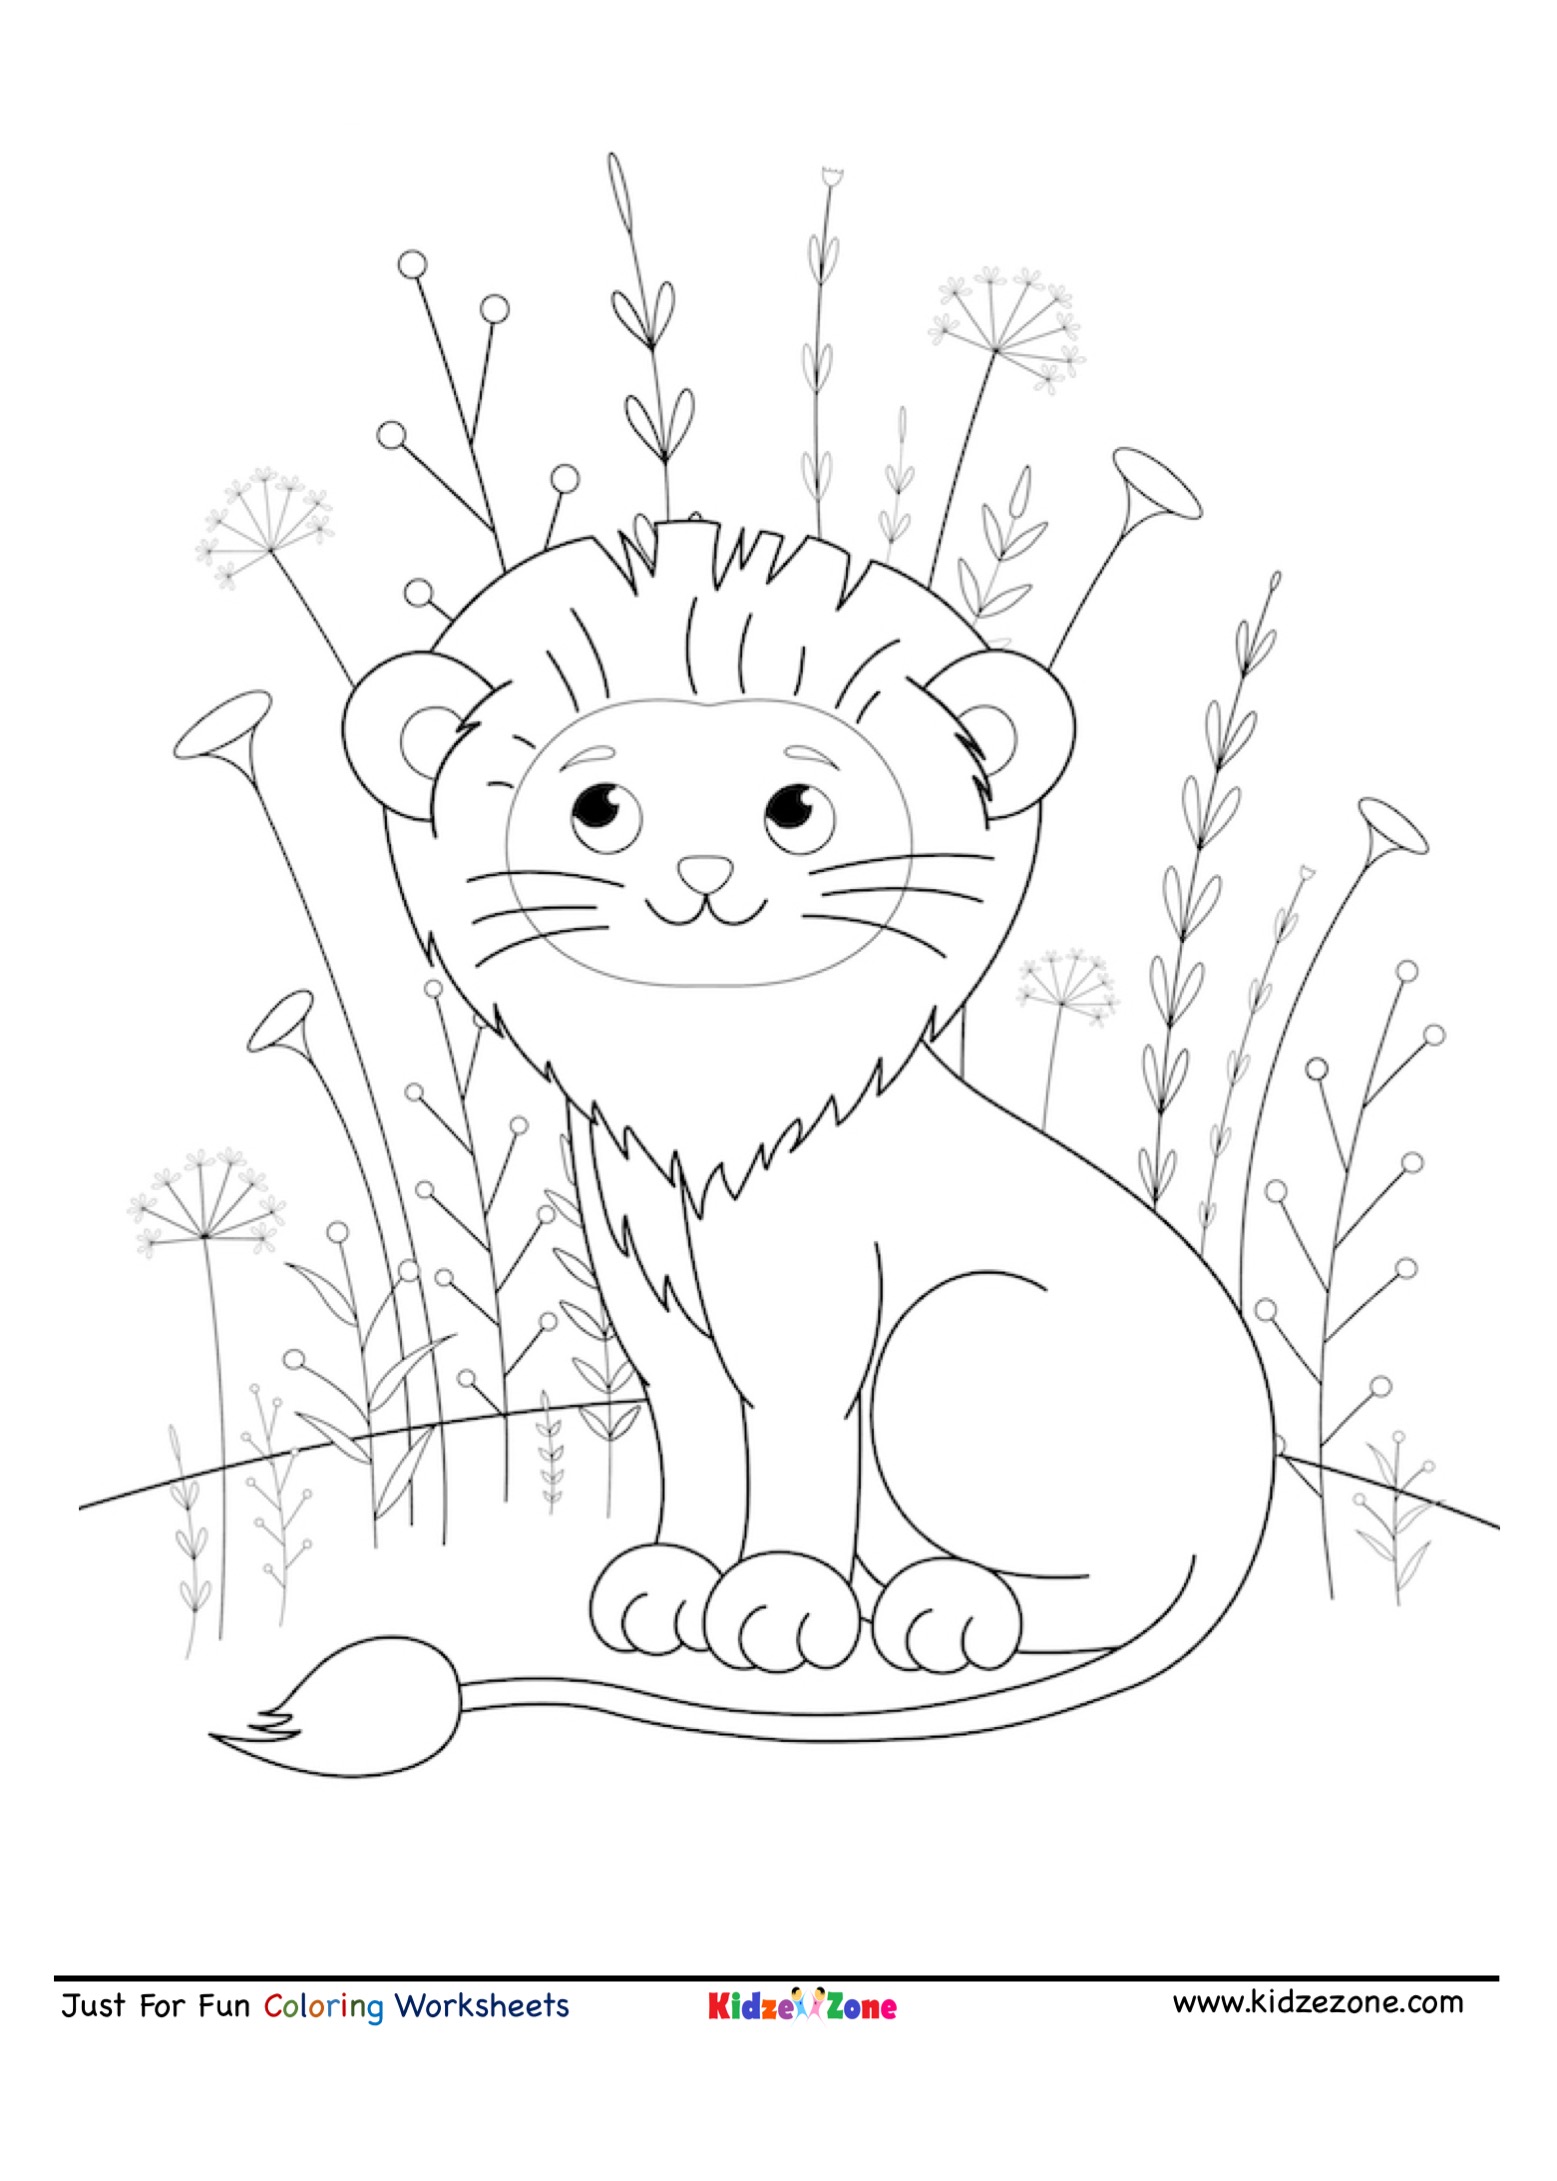 Cute Smiling Lion coloring Page - KidzeZonekidzezone.com